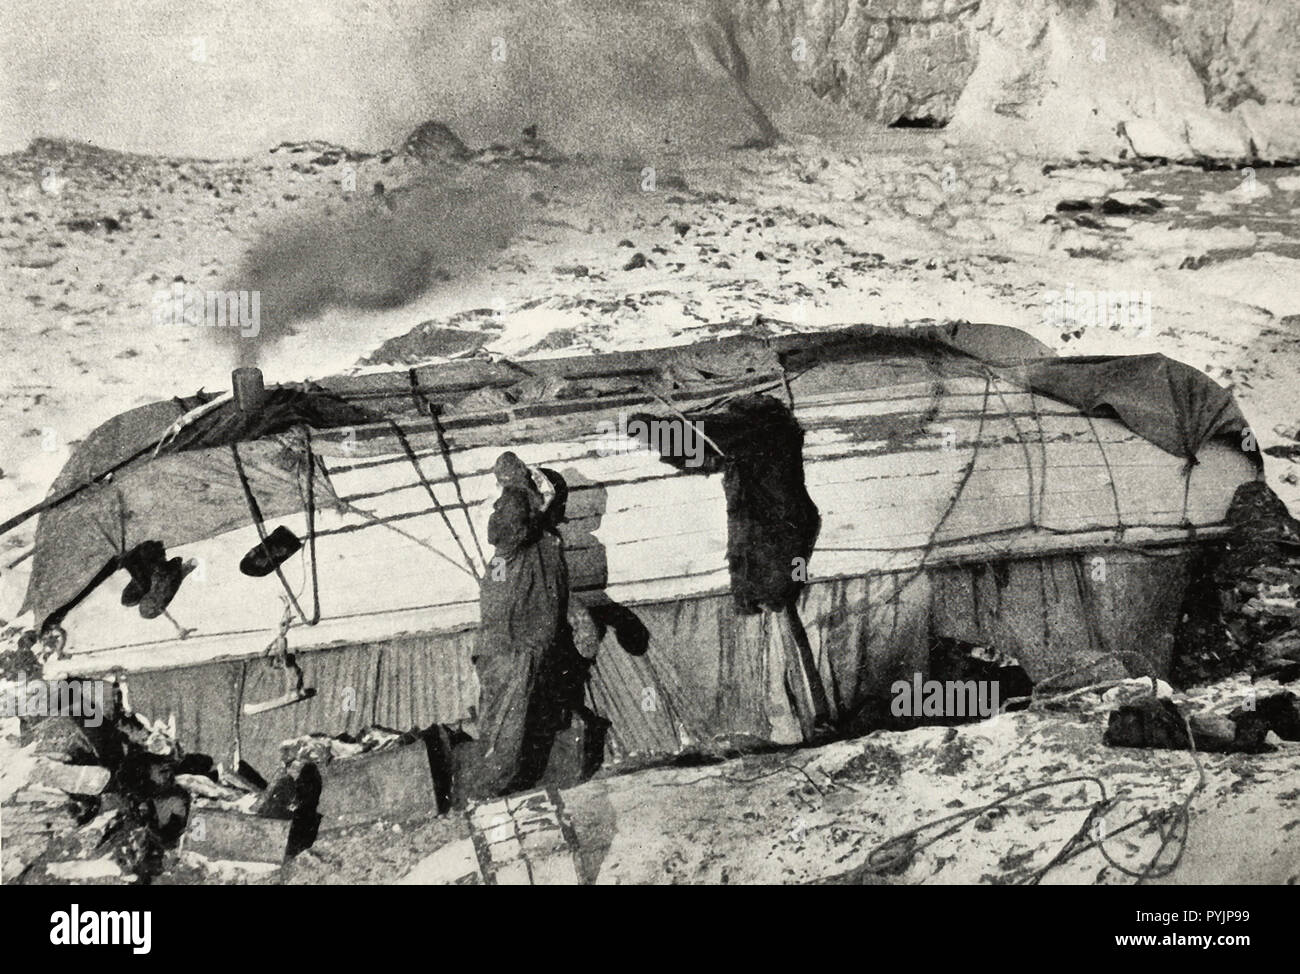 Il 'Snuggery' dove venti una fregata uomini abitavano pranzo come sardine - Elephant Island durante la spedizione di Shackleton Foto Stock